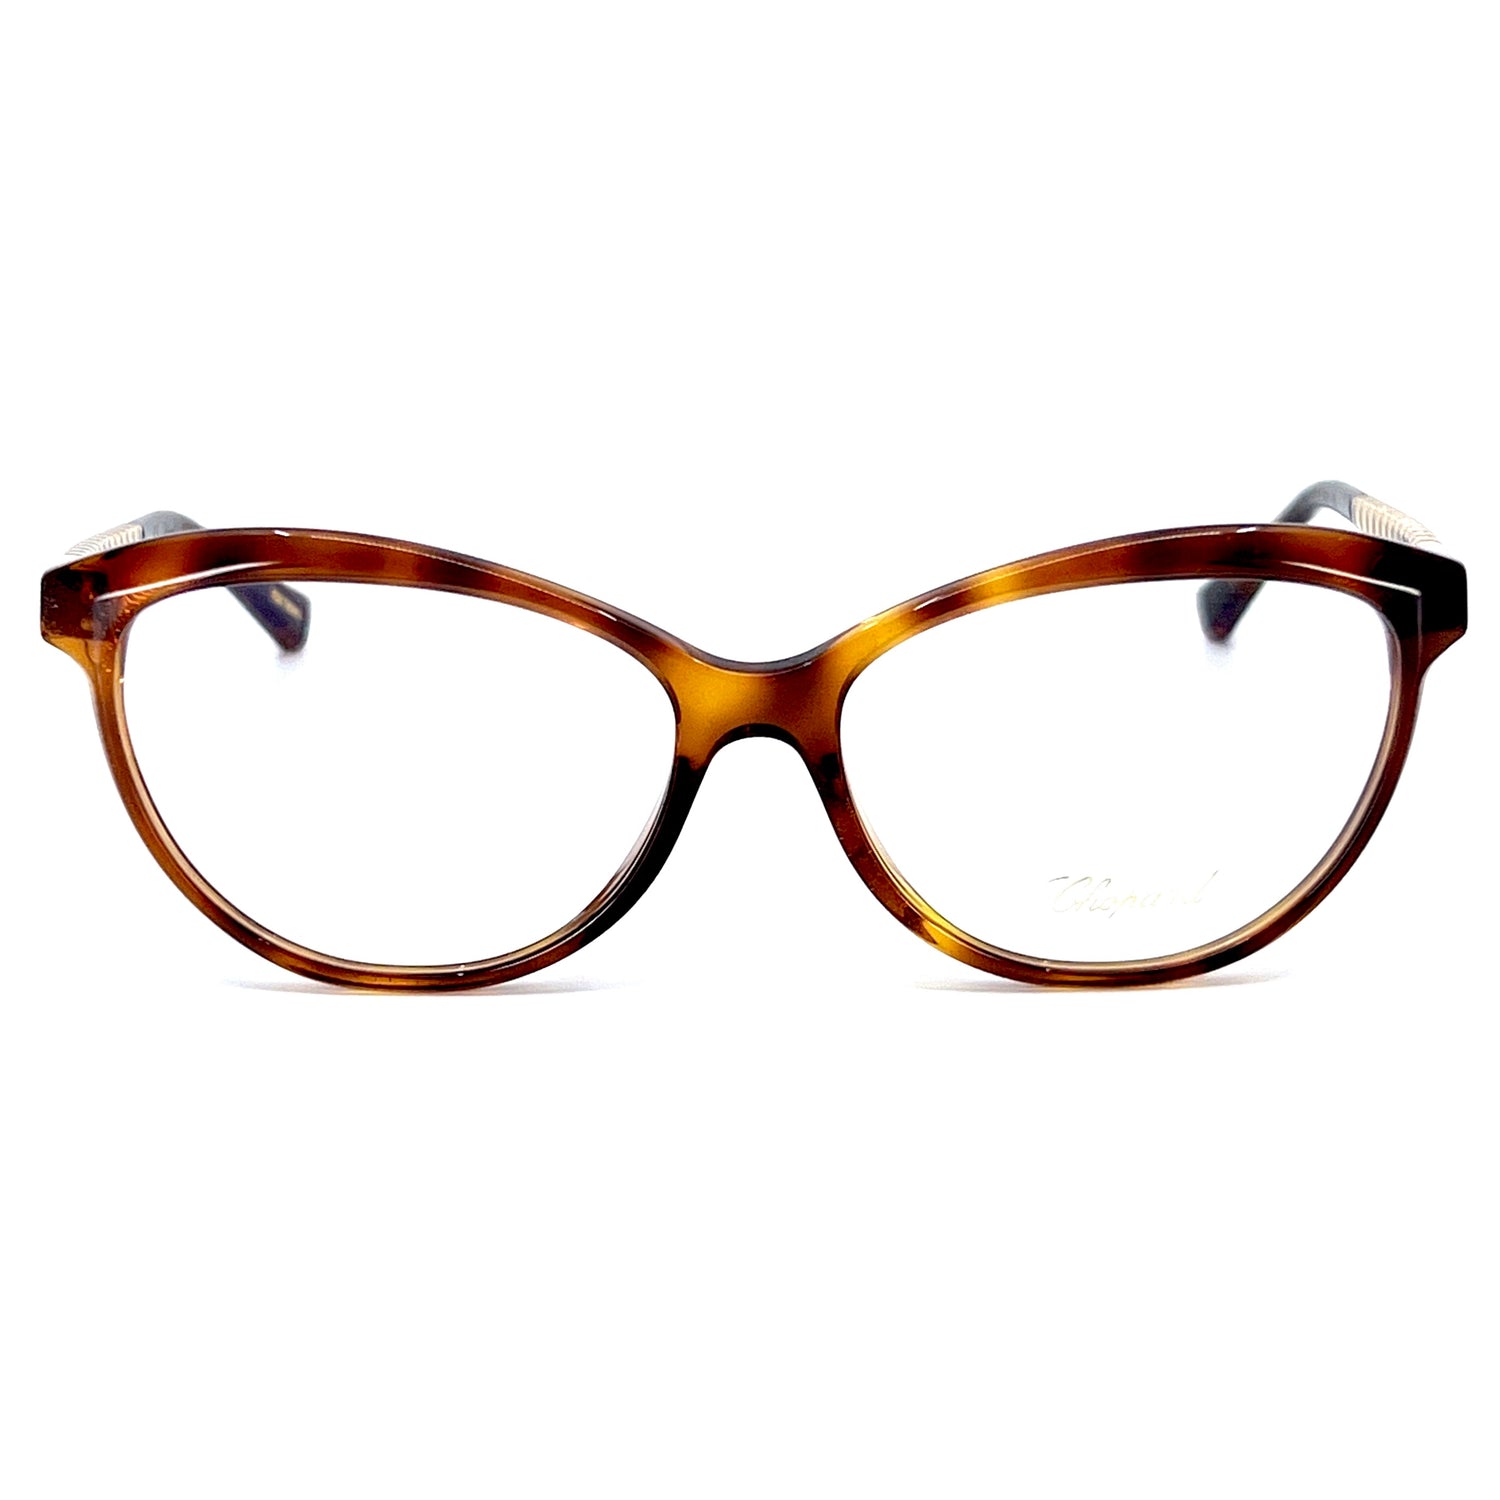 Chopard eyeglasses